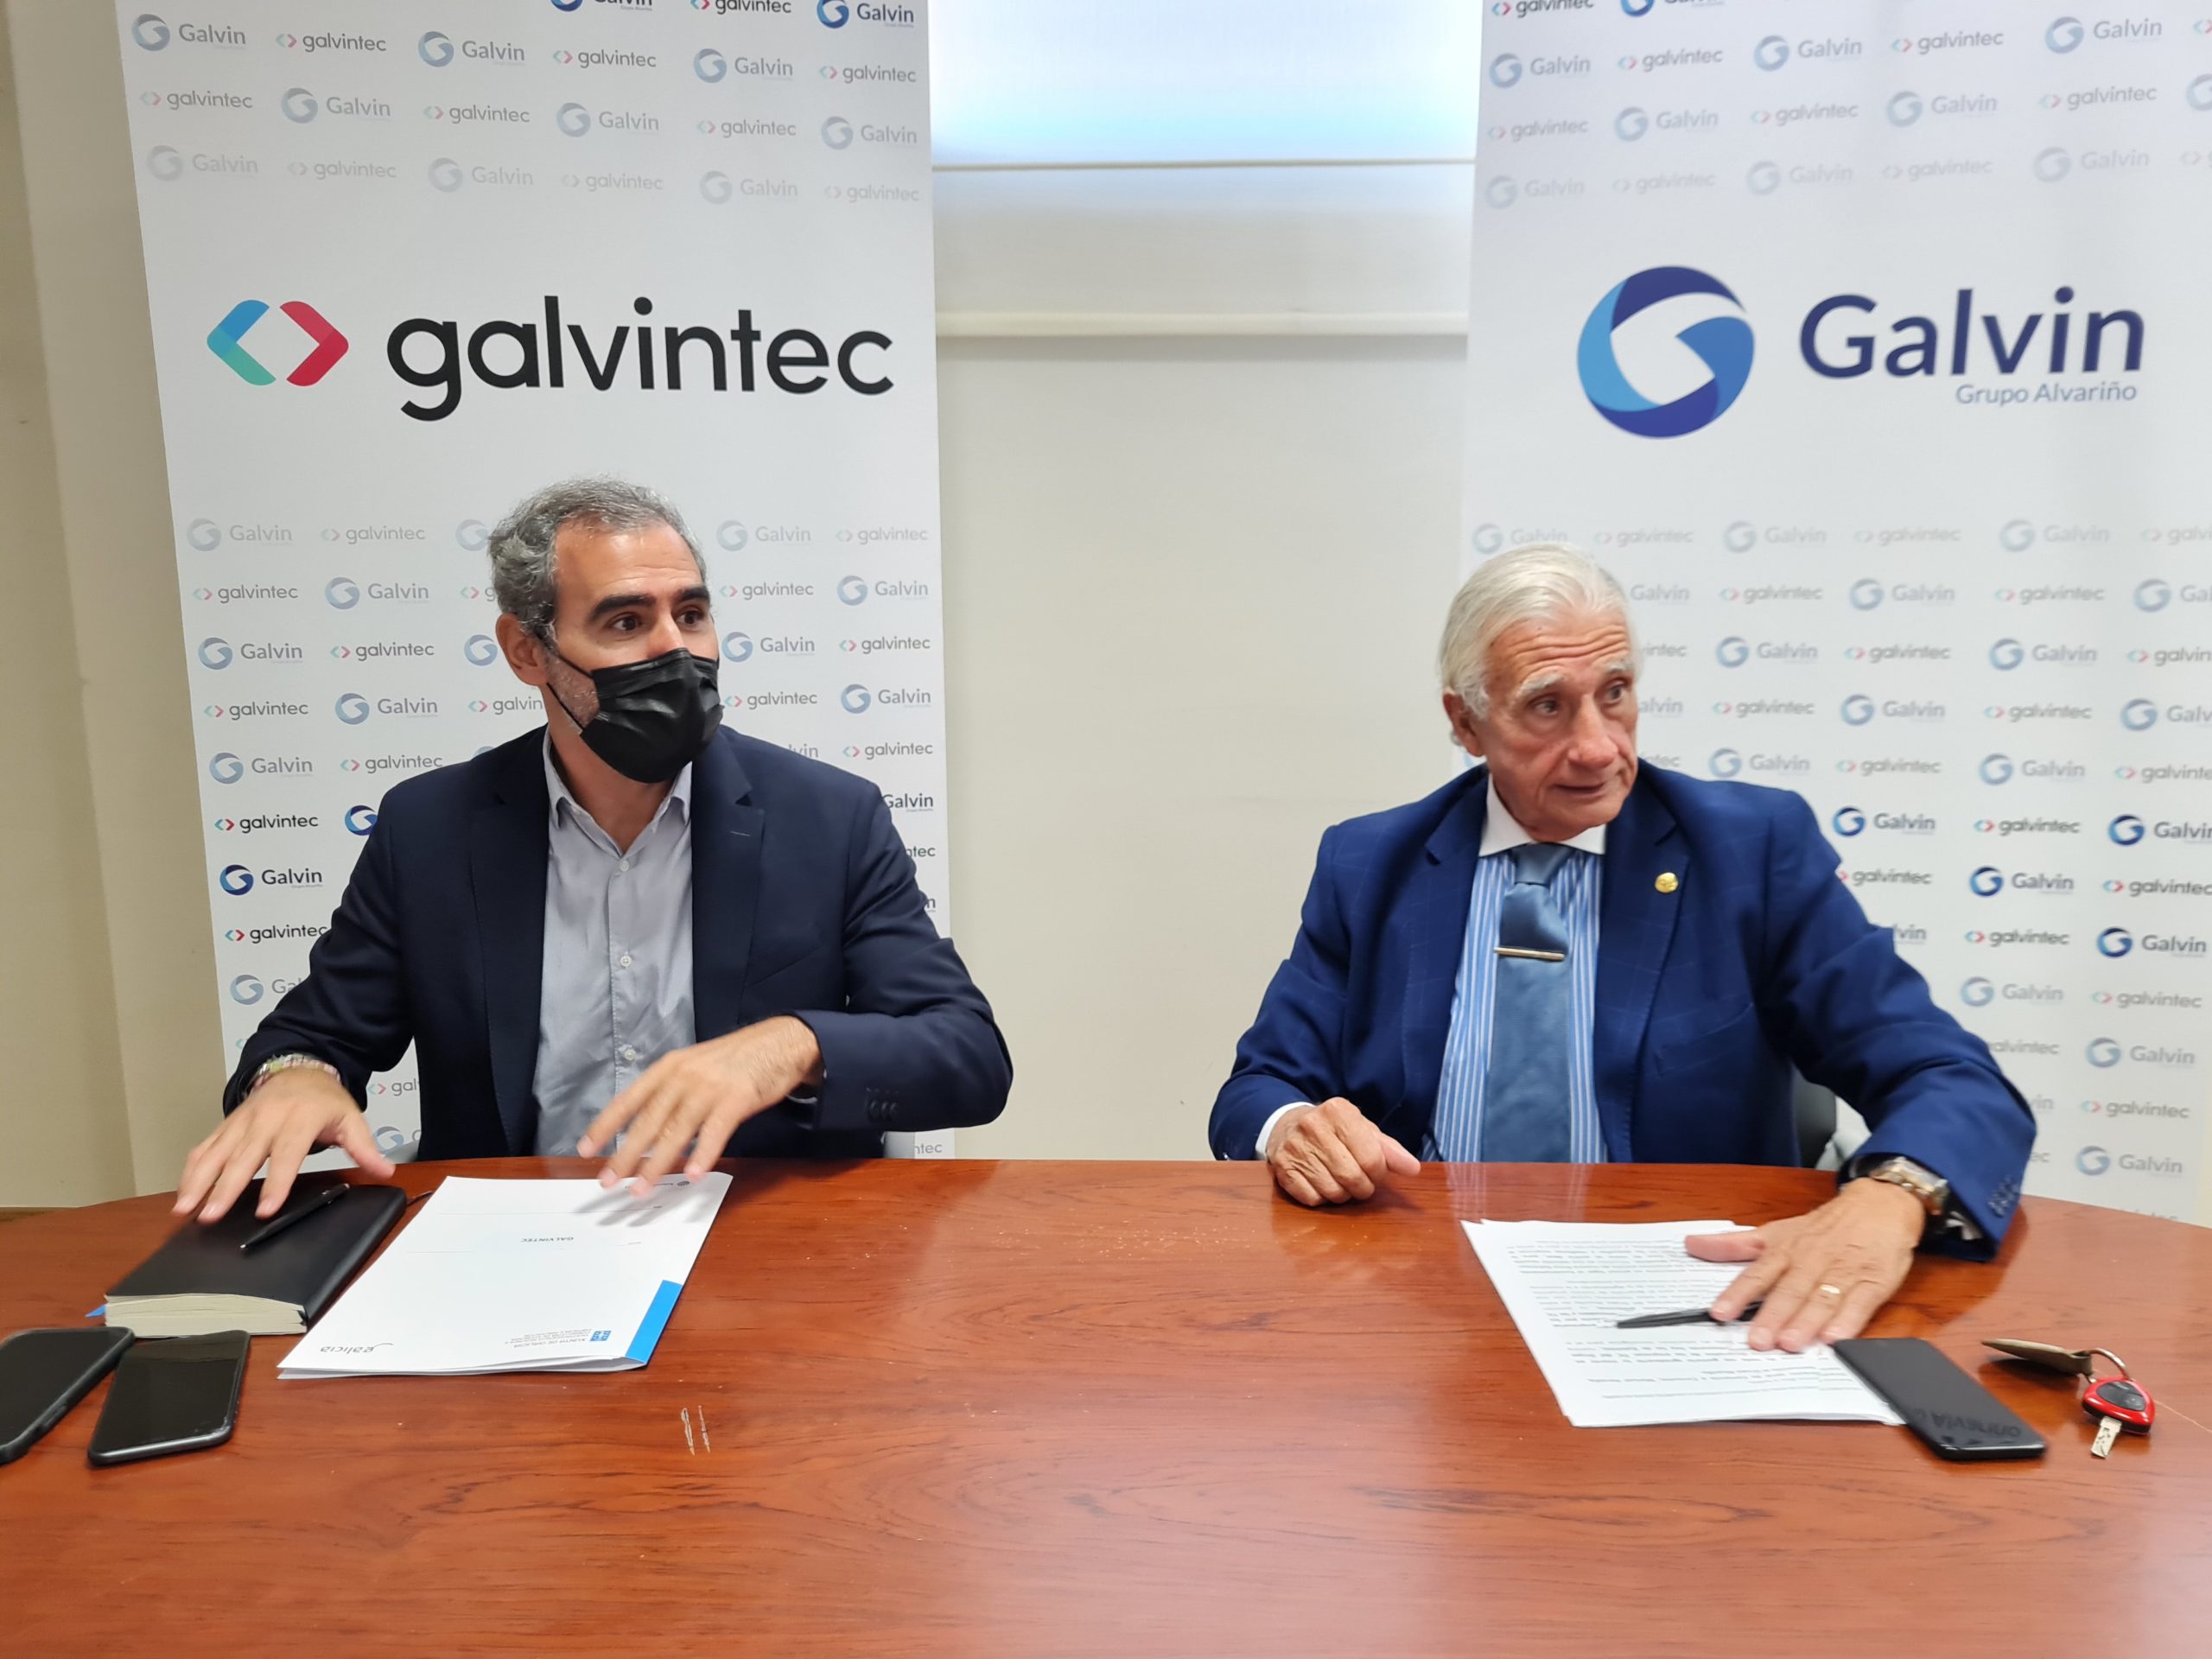 Galvintec presenta el proyecto Moodular, una solución llave en mano para facilitar el acceso de las pymes al e-commerce